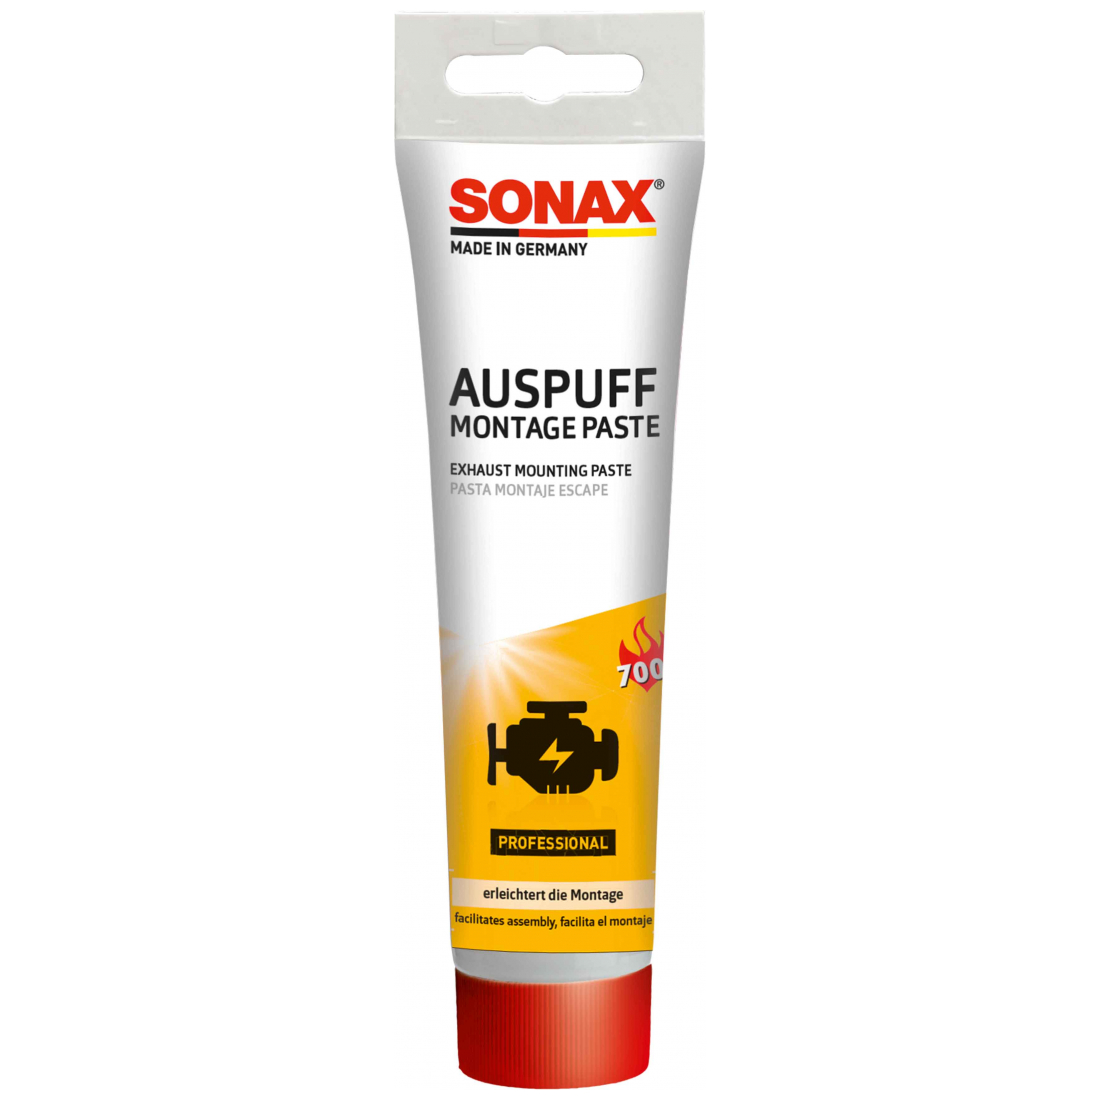 SONAX AuspuffMontagePaste 170ml